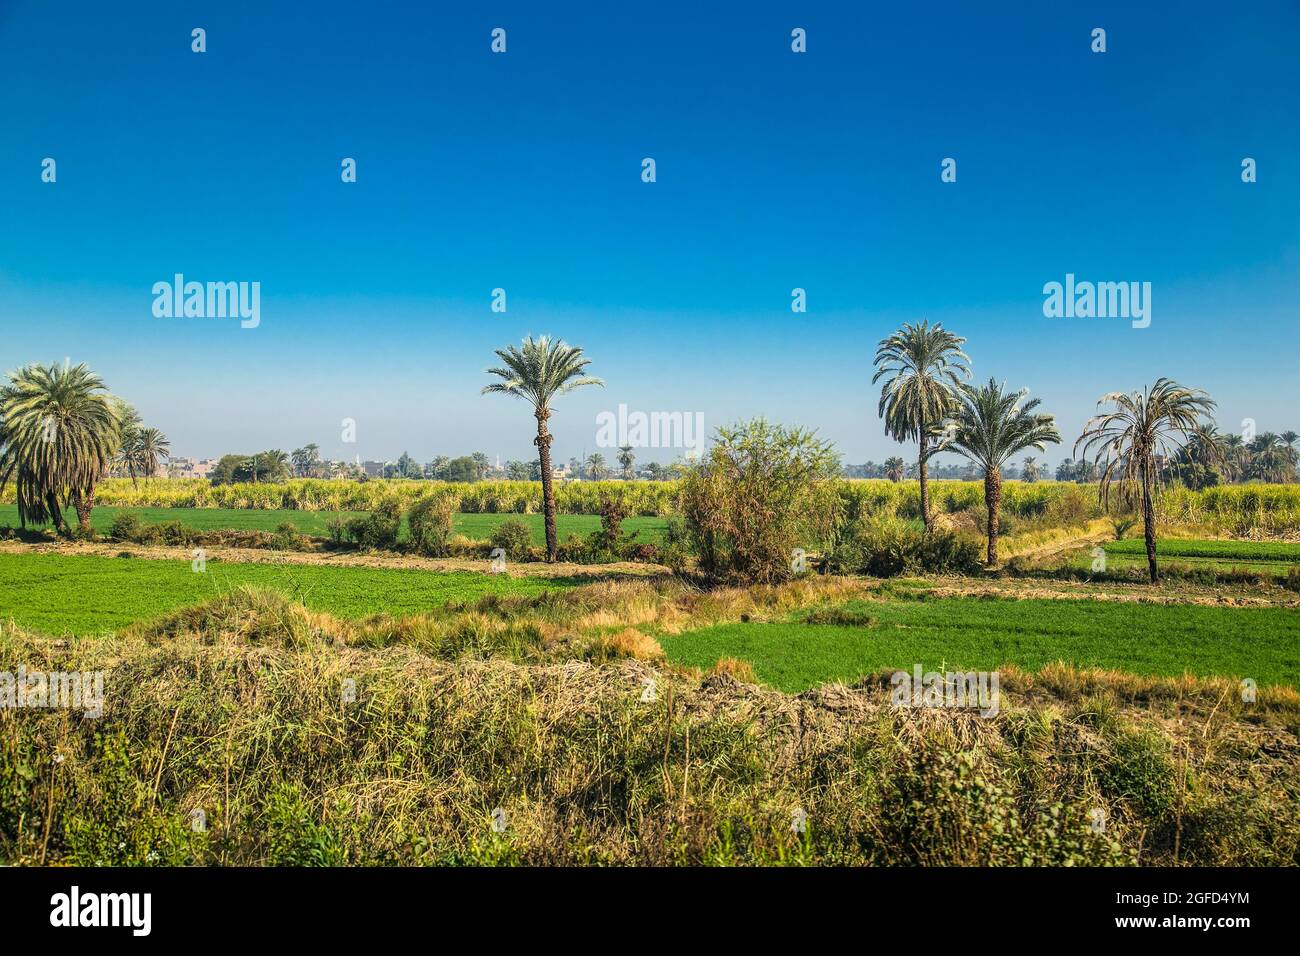 Cantryside égyptien près du canal d'irrigation du Nil . Paysage vert, palmiers dans la vallée du Nil. Égypte. Banque D'Images